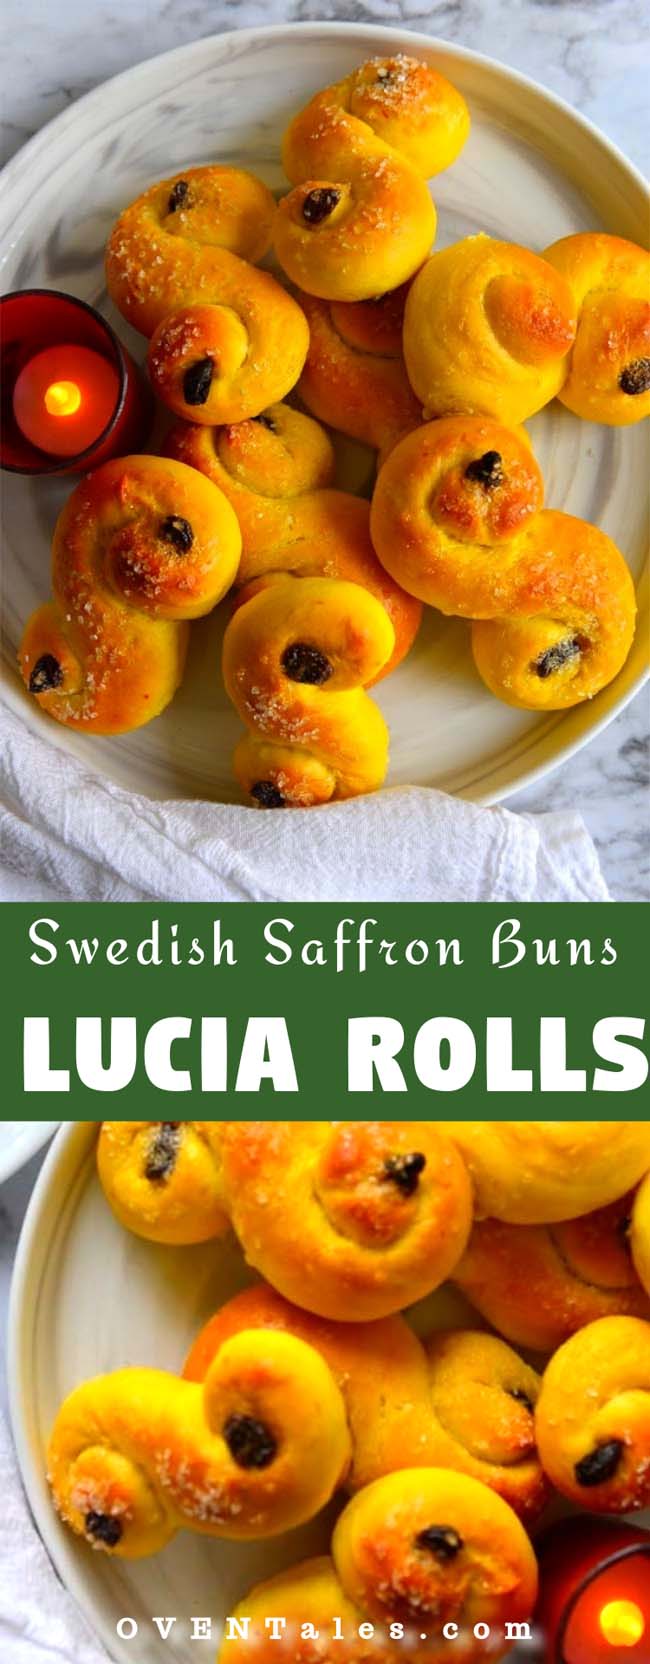 St. Lucia Buns , Lessekatter ot Lucia rolls - the swedish saffron buns